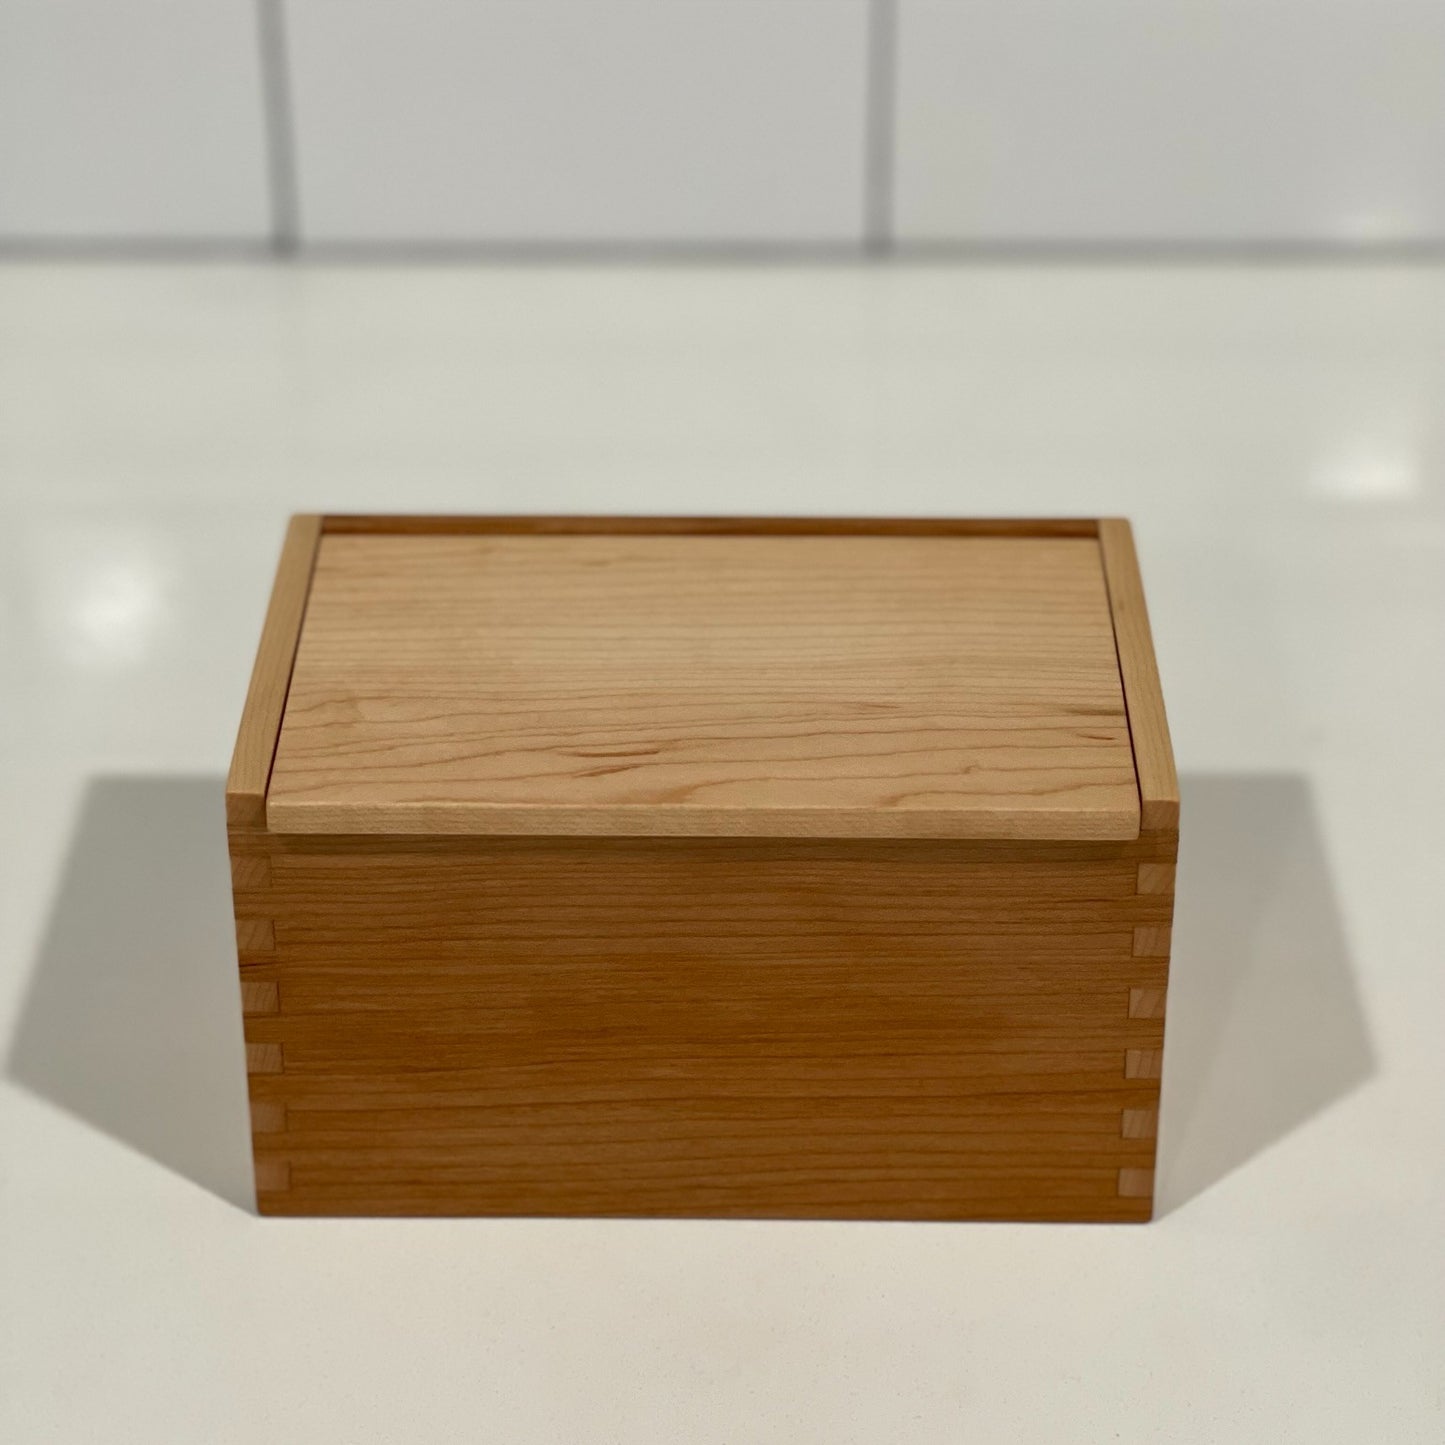 Wood Salt Cellar - Salt Box - Salt Pig - Keepsake Box - Maple and Cherry